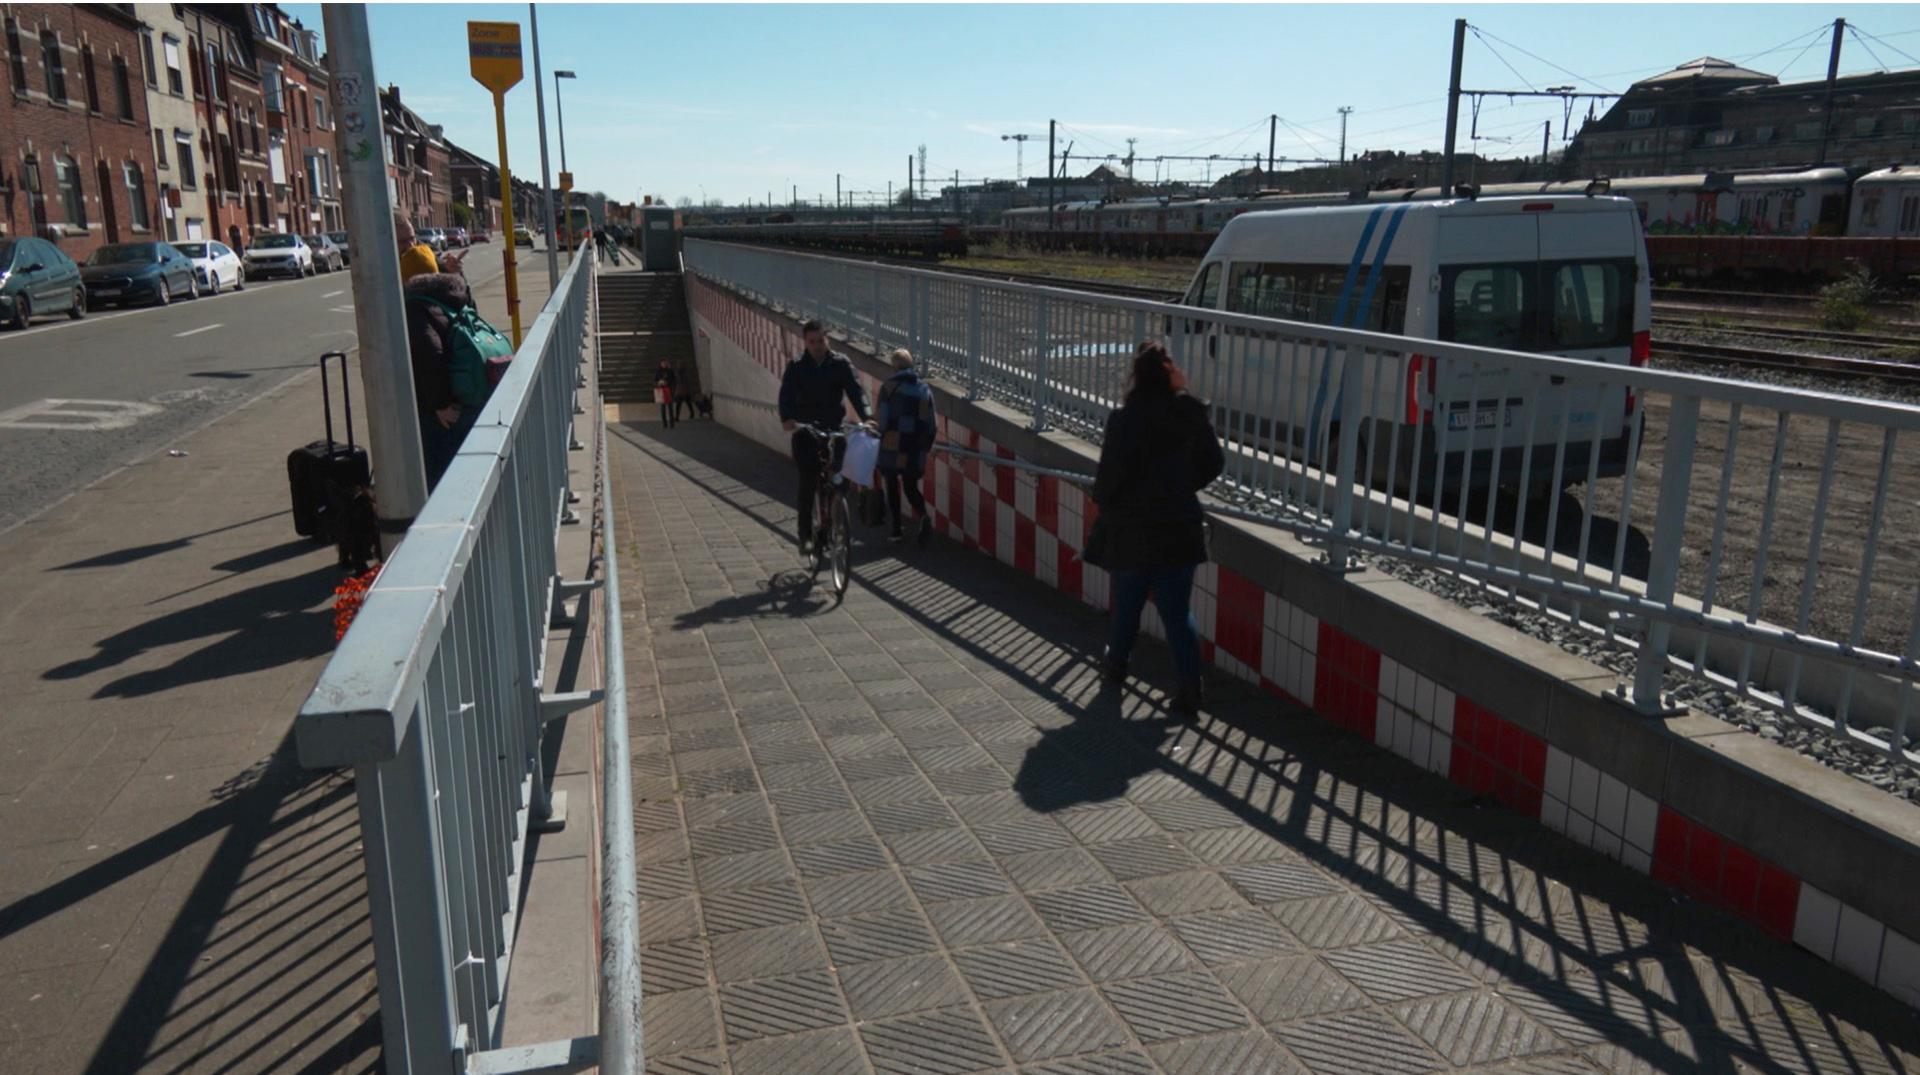 Ascenseur et aménagements pour les PMR : l'accessibilité de la gare de Tournai va être améliorée